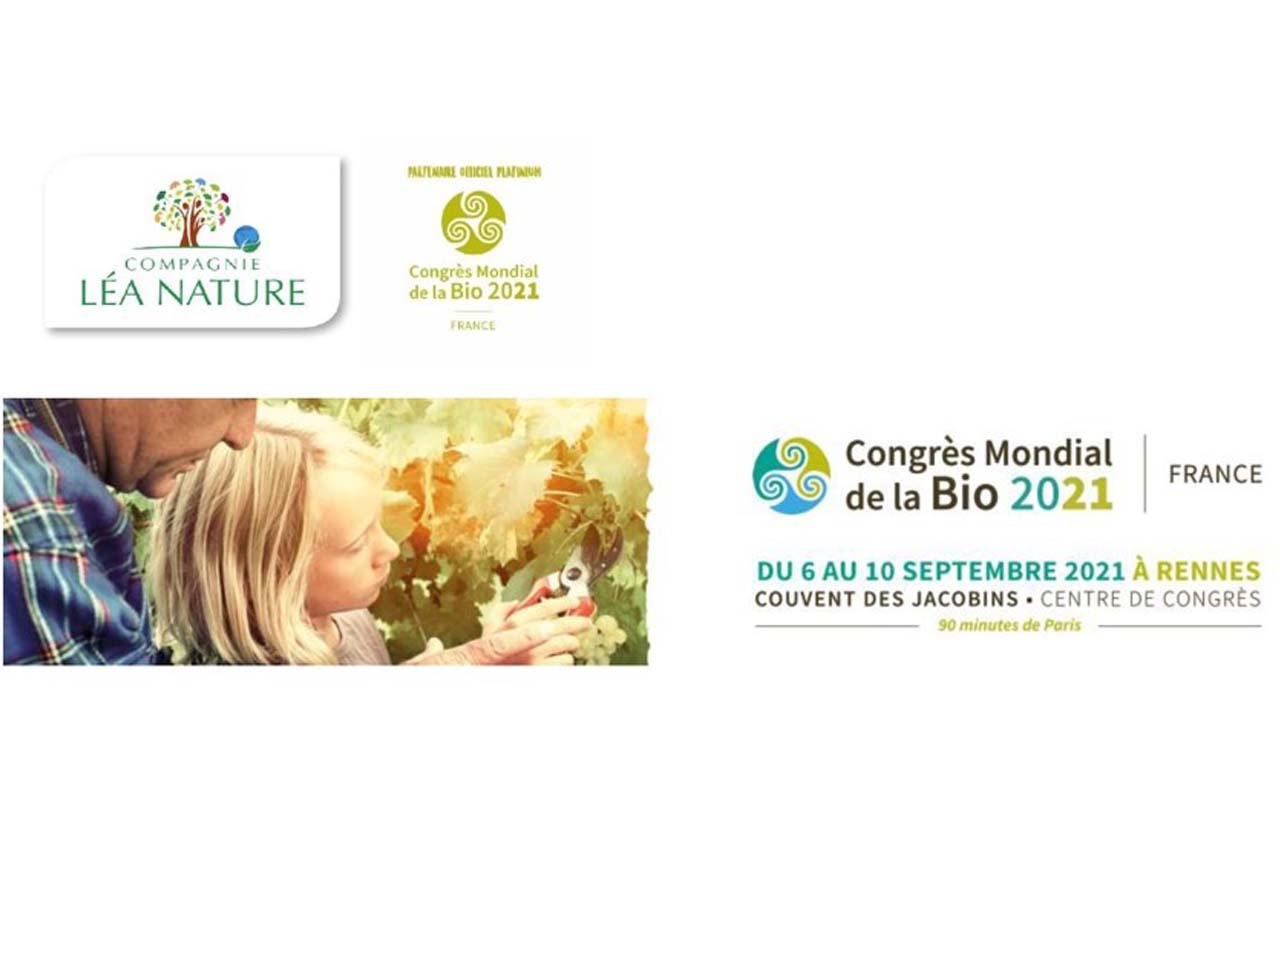 Compagnie Léa Nature œuvre depuis 30 ans en faveur d’une bio locale et made in France